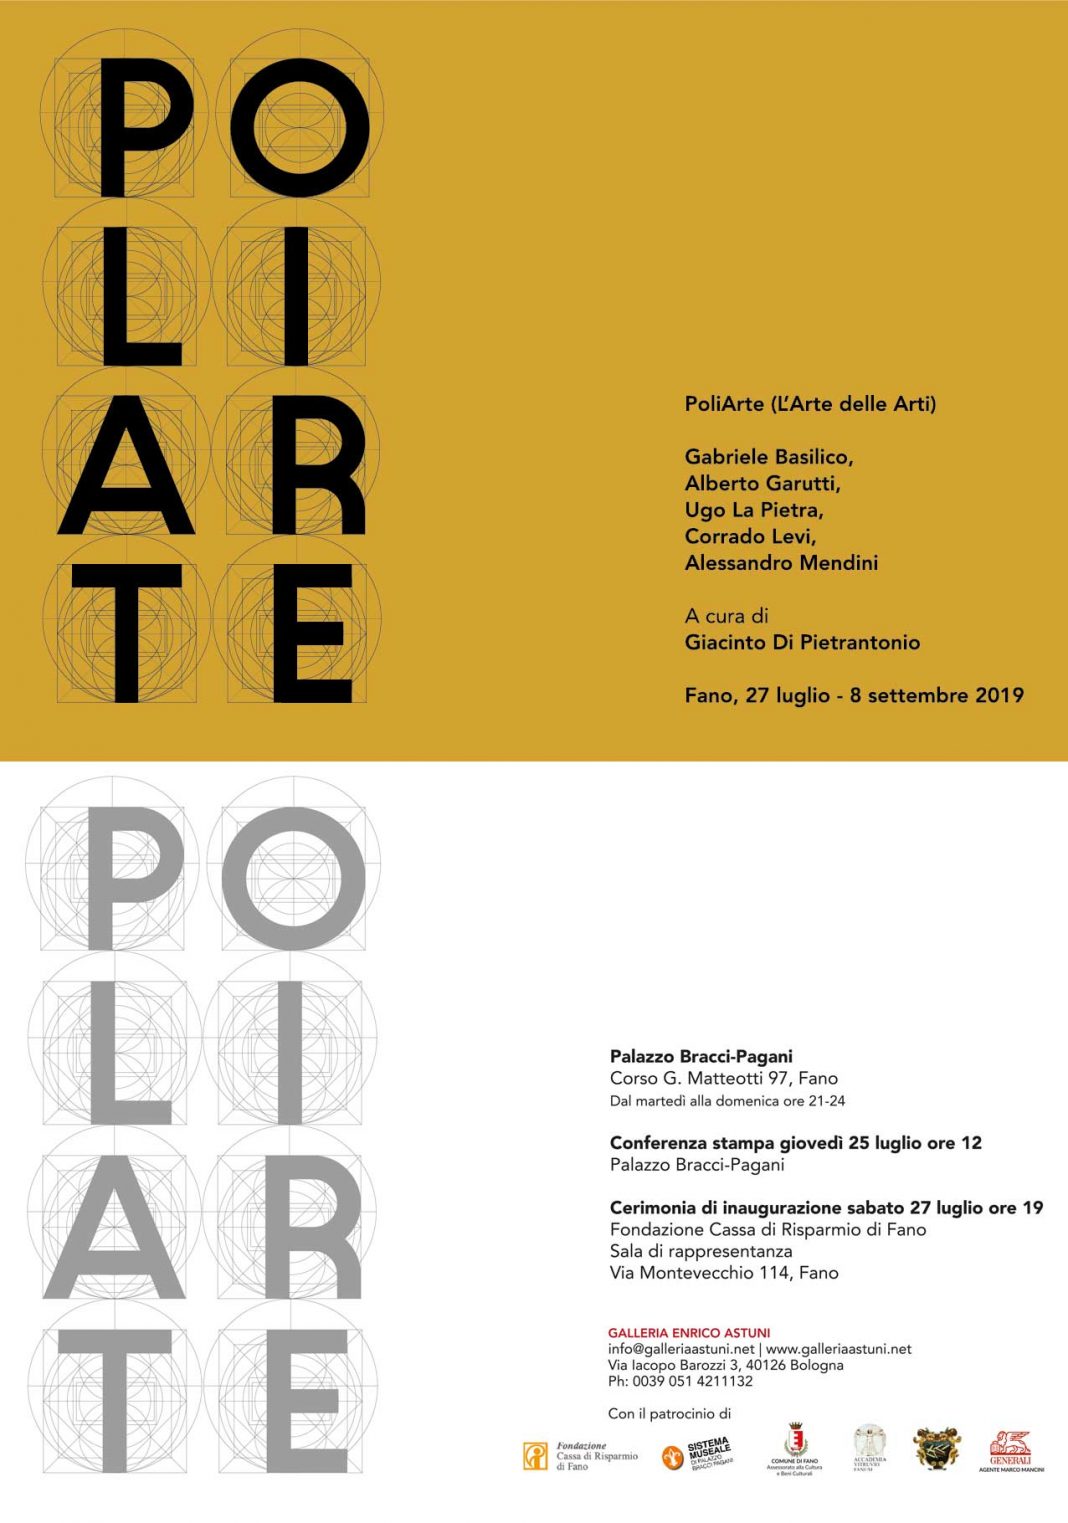 PoliArte (L’Arte delle Arti)https://www.exibart.com/repository/media/eventi/2019/07/poliarte-l’arte-delle-arti-1068x1523.jpg